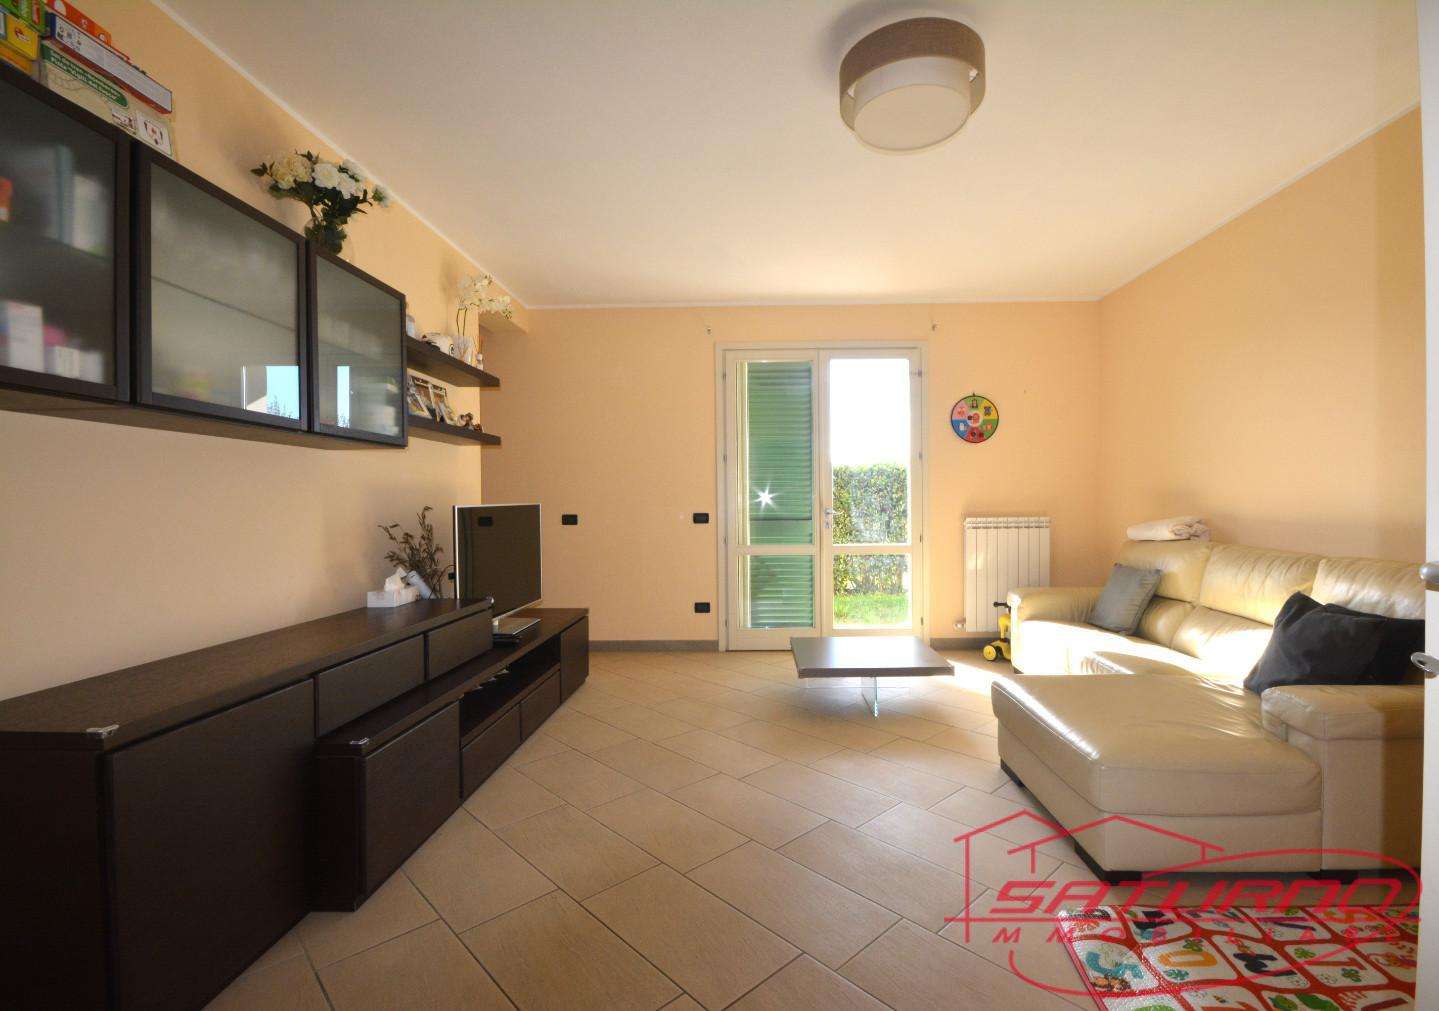 Casa Bi - Trifamiliare in Vendita a Lucca Via San Cassiano a Vico, 55100